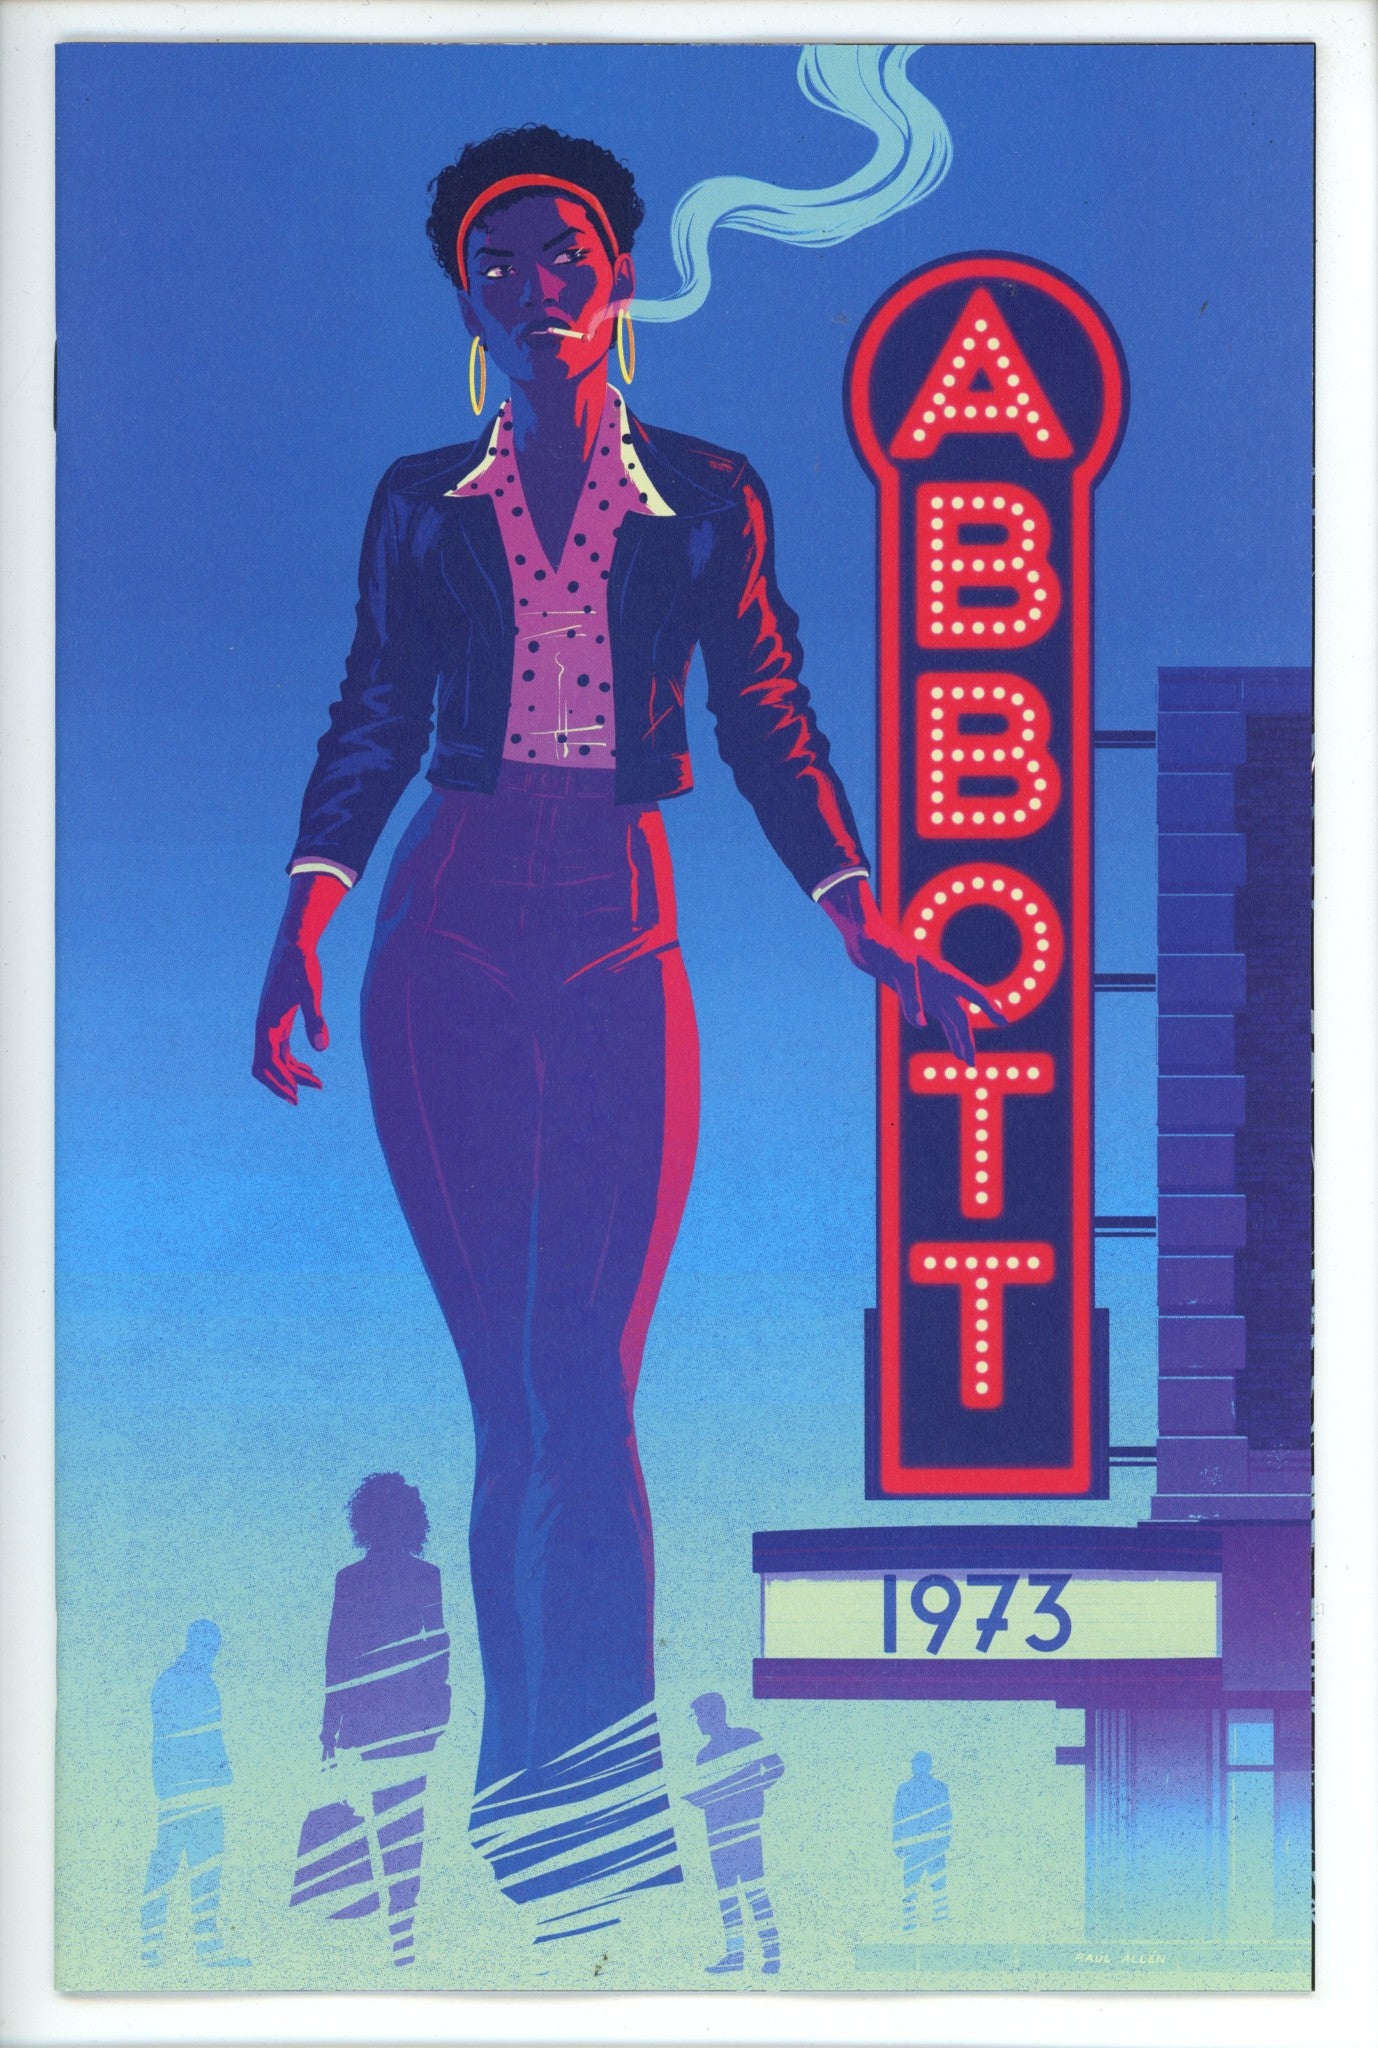 Abbot 1973 2 Allen Variant-Boom-CaptCan Comics Inc